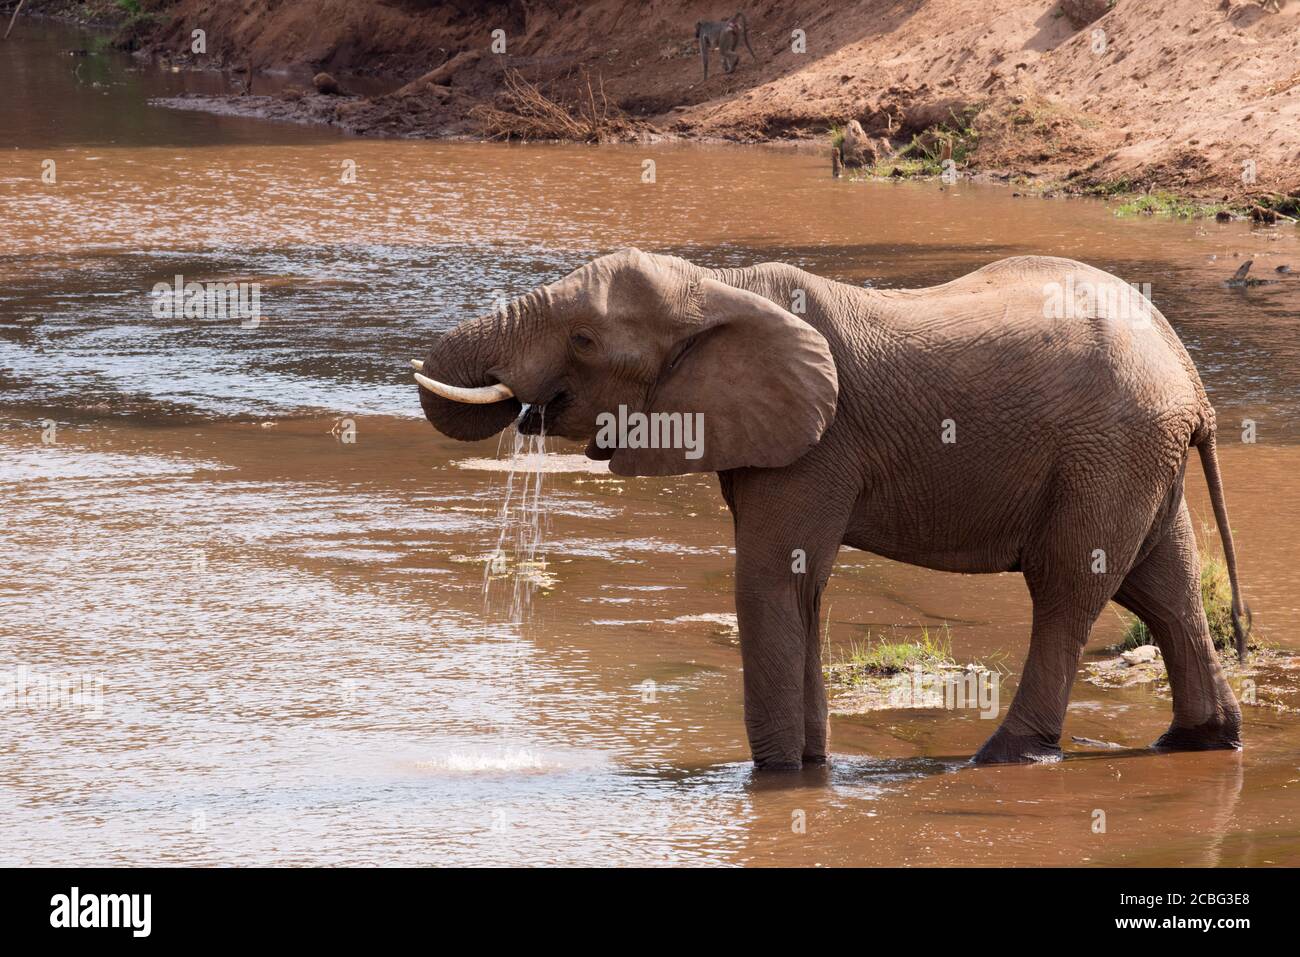 Éléphant en Afrique boire de l'eau son tronc court par pulvérisation il dans sa bouche et dans le processus de l'eau qui coule en sortant et en descendant dans la rivière Banque D'Images